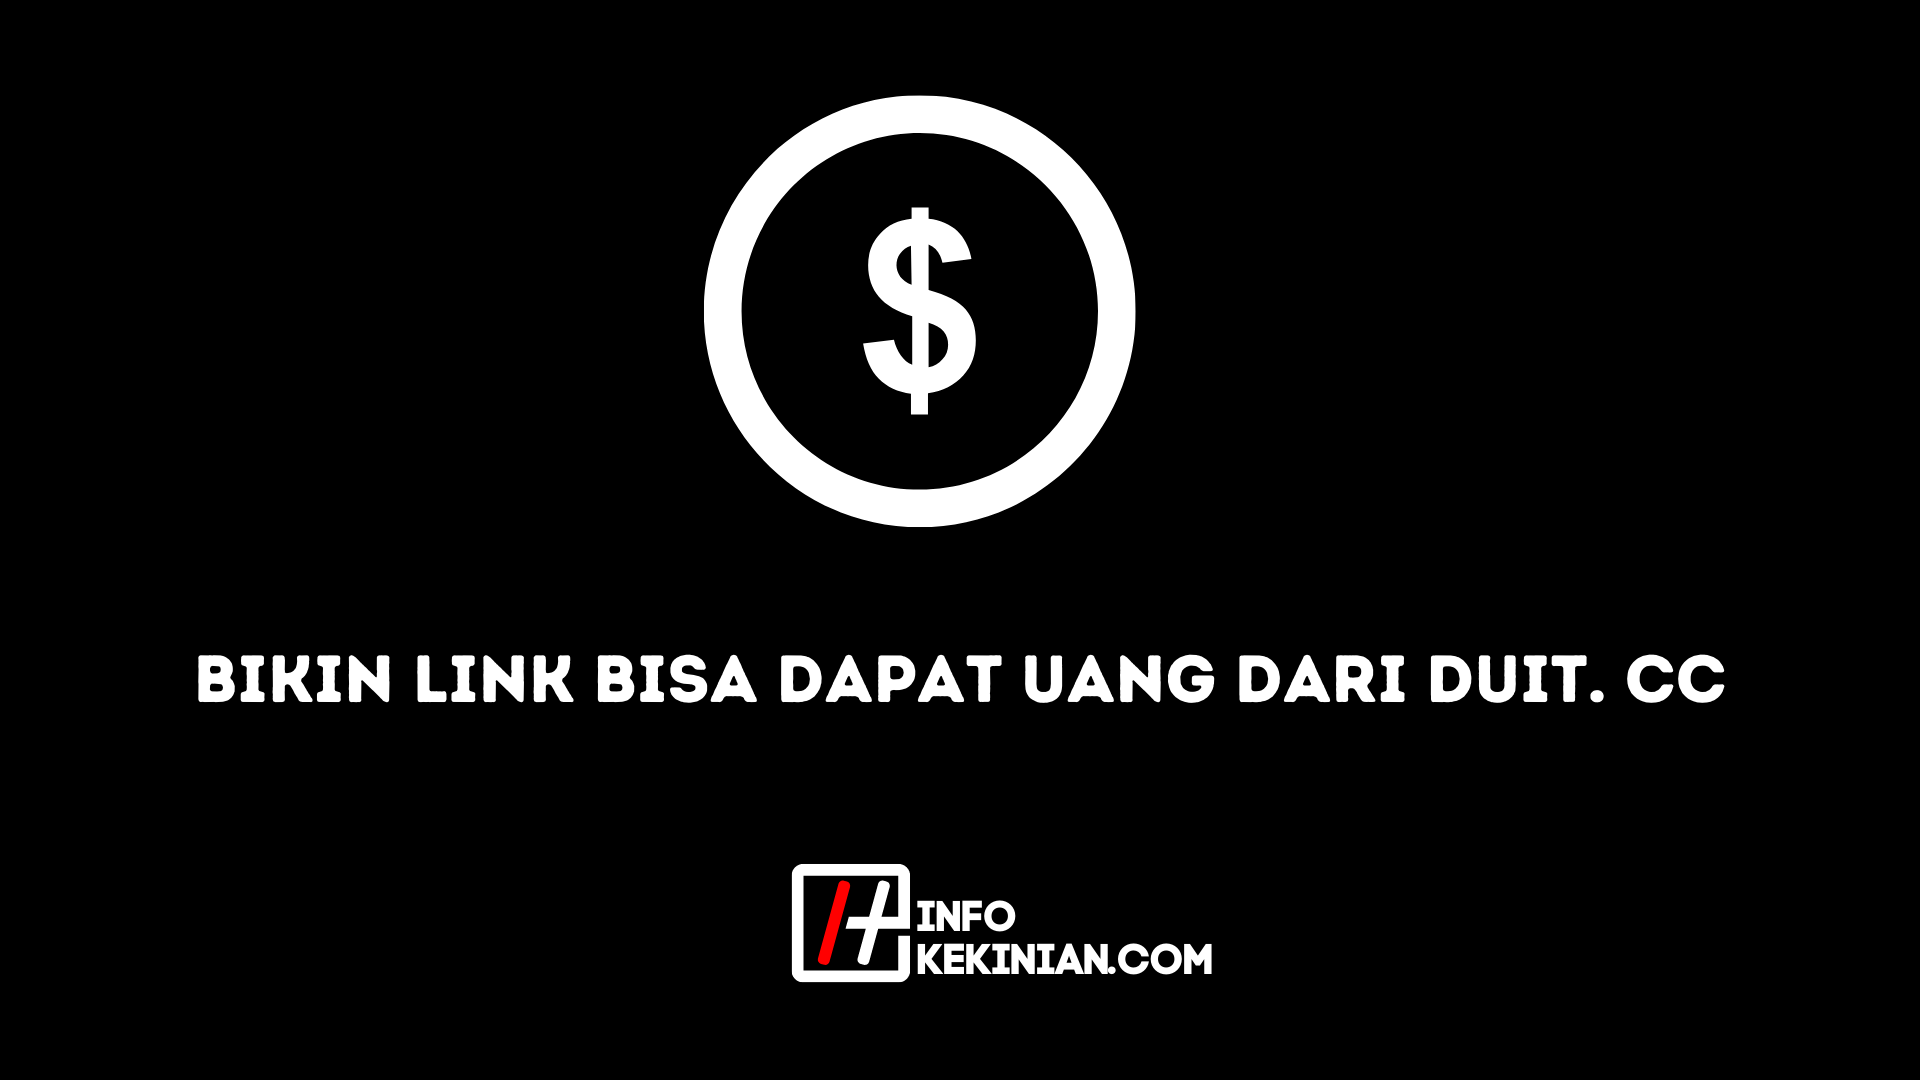 Bikin Link Bisa Dapat Uang Dari Duit. CC, Simak Ulasannya!